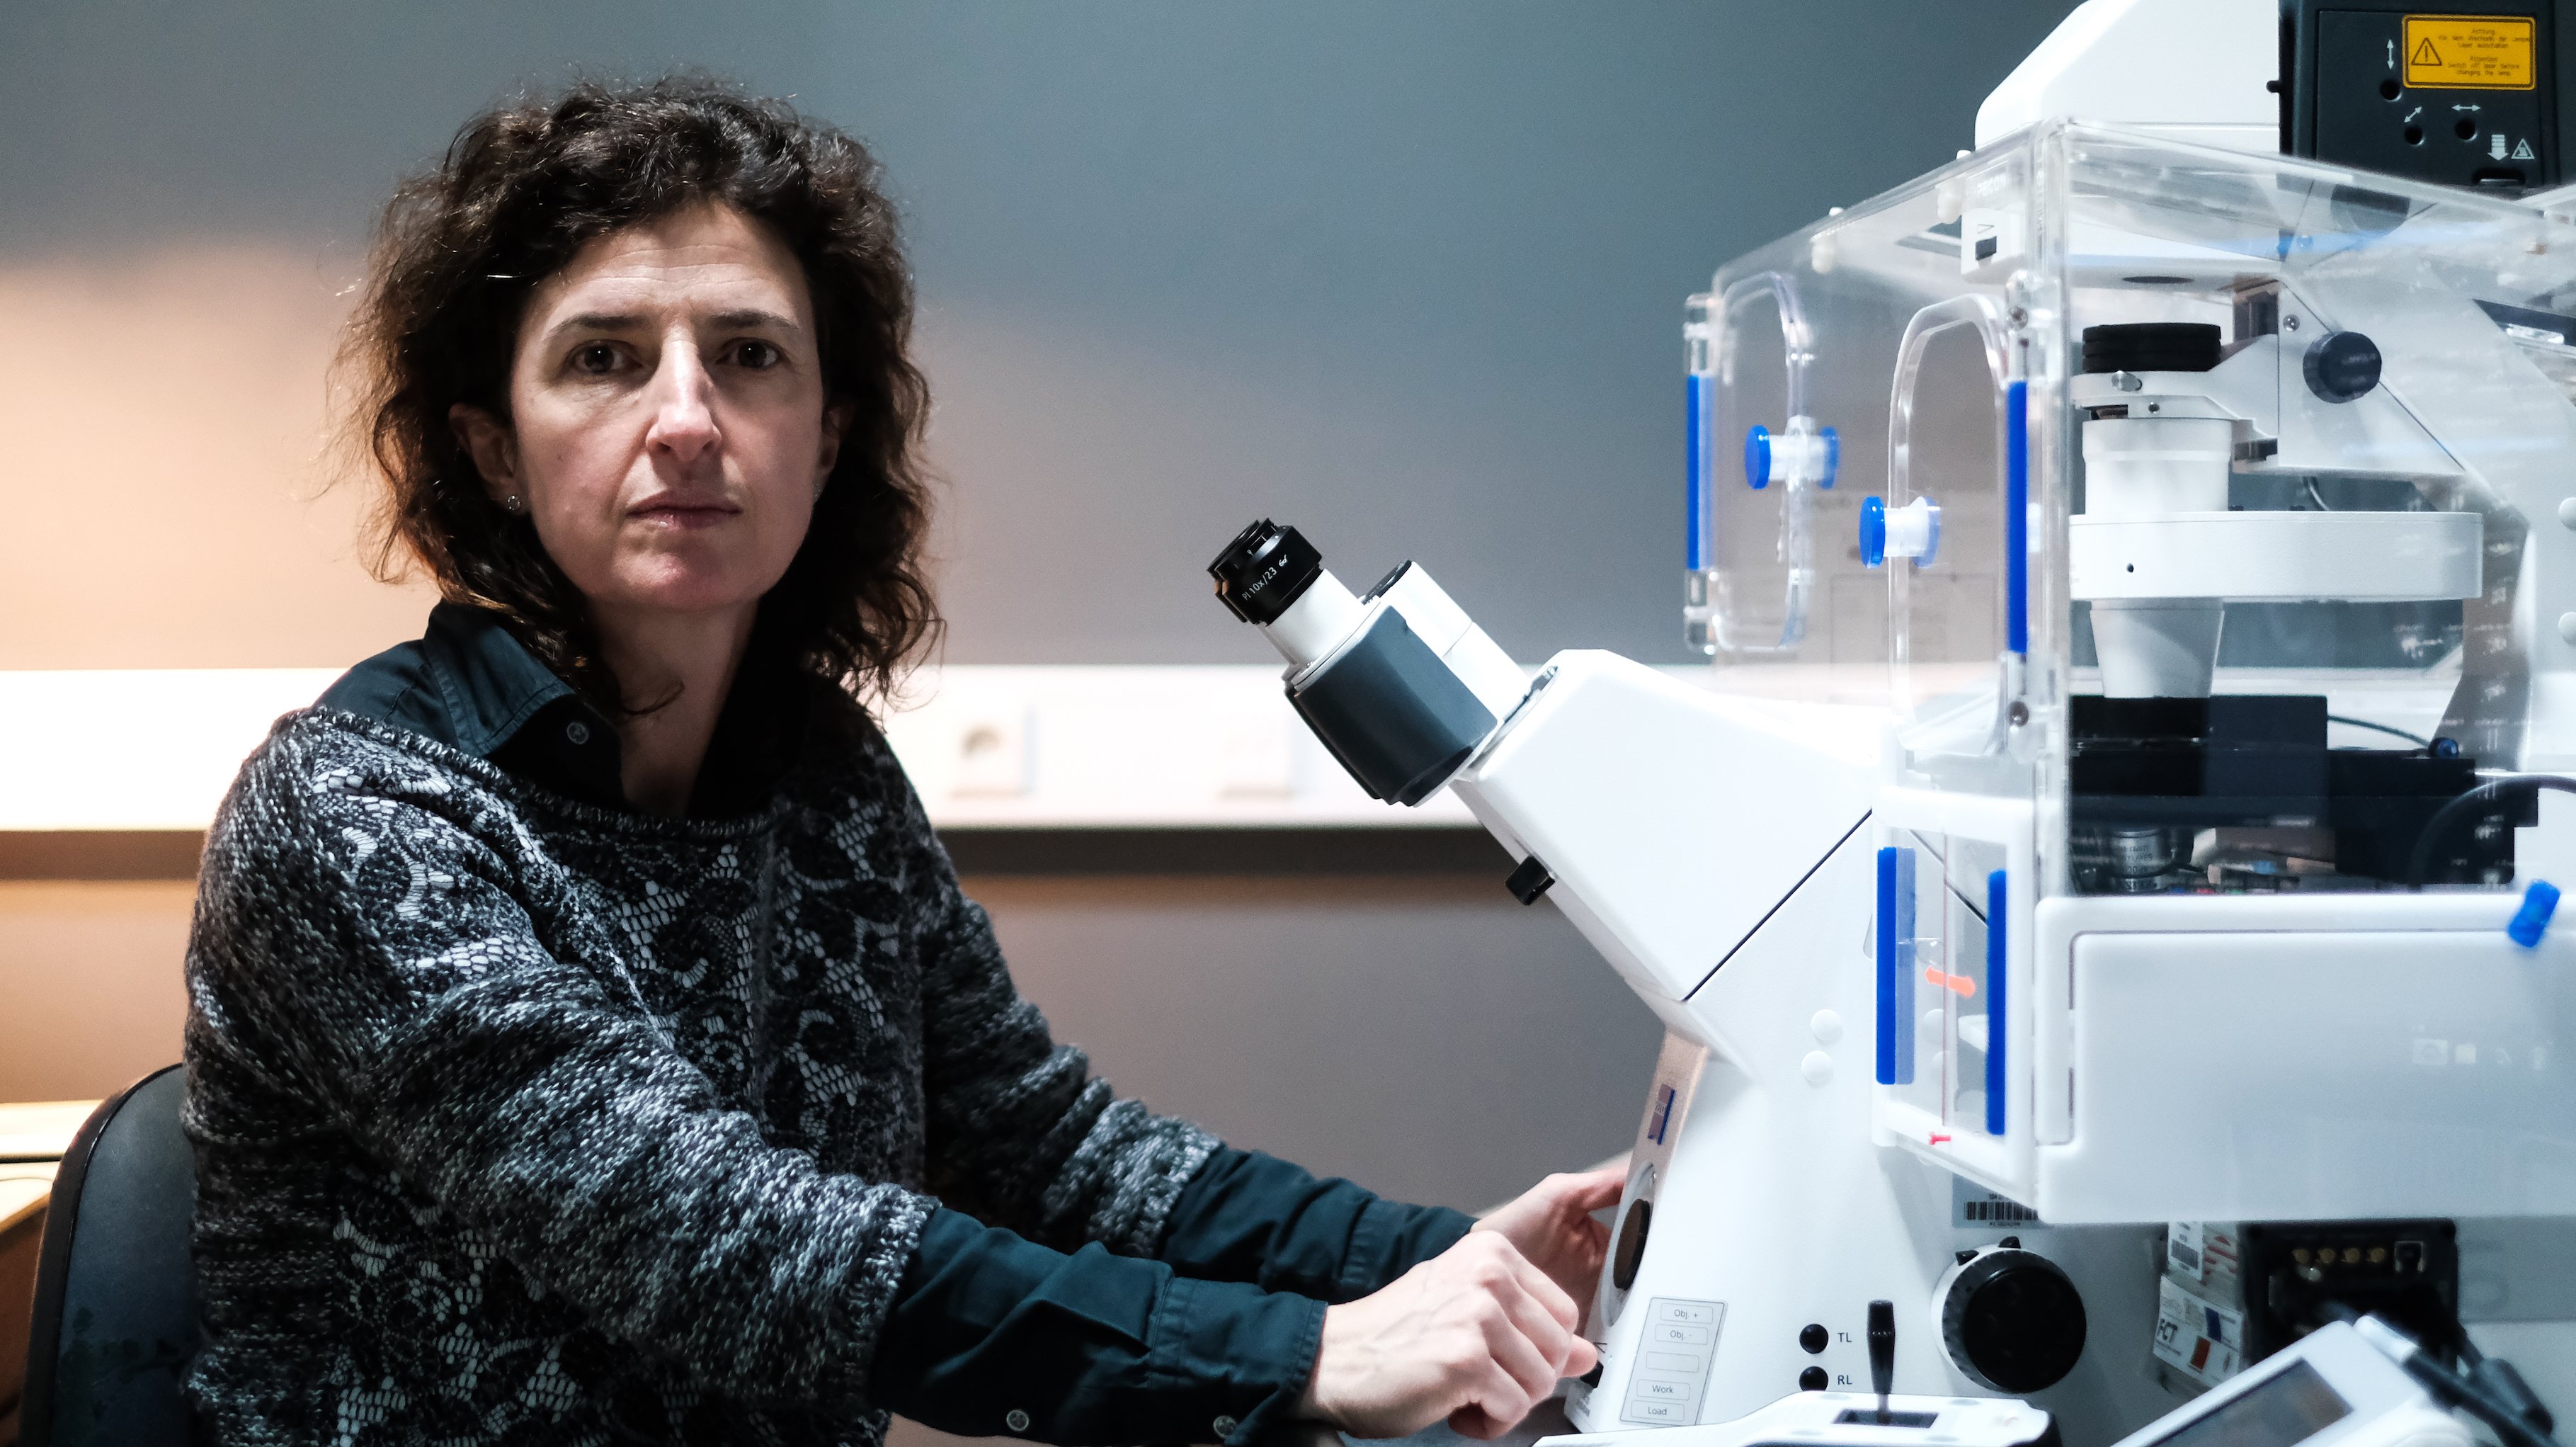 Investigadora, professora e vice-presidente do CNC, Ana Luísa Carvalho é licenciada em Bioquímica pela Universidade de Coimbra, fez investigação na Faculdade de Medicina da Universidade Johns Hopkins, nos EUA, e trabalhou na University of British Columbia, no Canadá